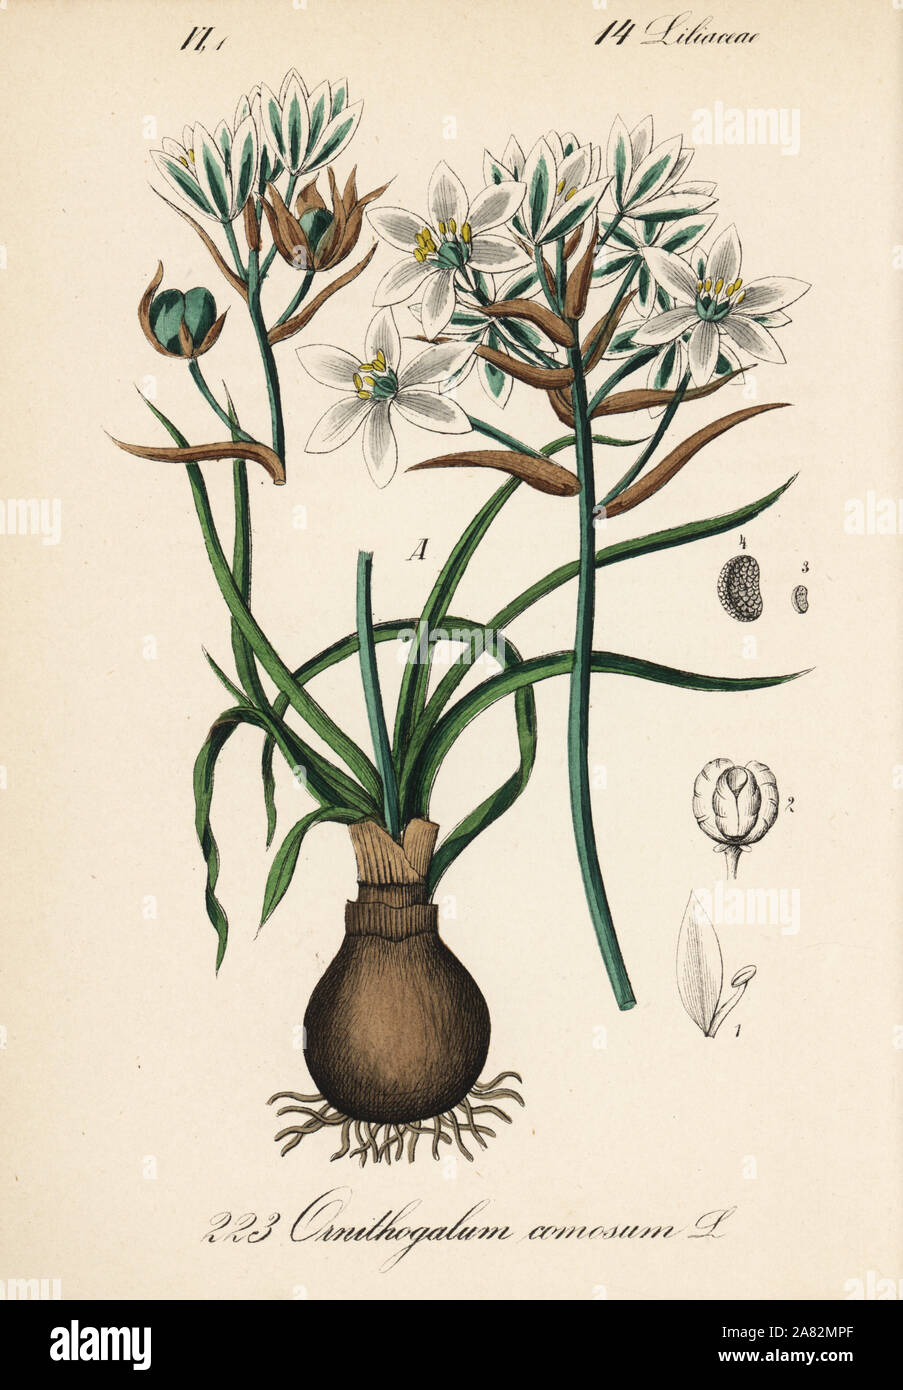 Ornithogalum comosum. Papierkörbe Lithographie von Diederich von Schlechtendal der Deutschen Flora (Flora von Deutschland), Jena, 1871. Stockfoto